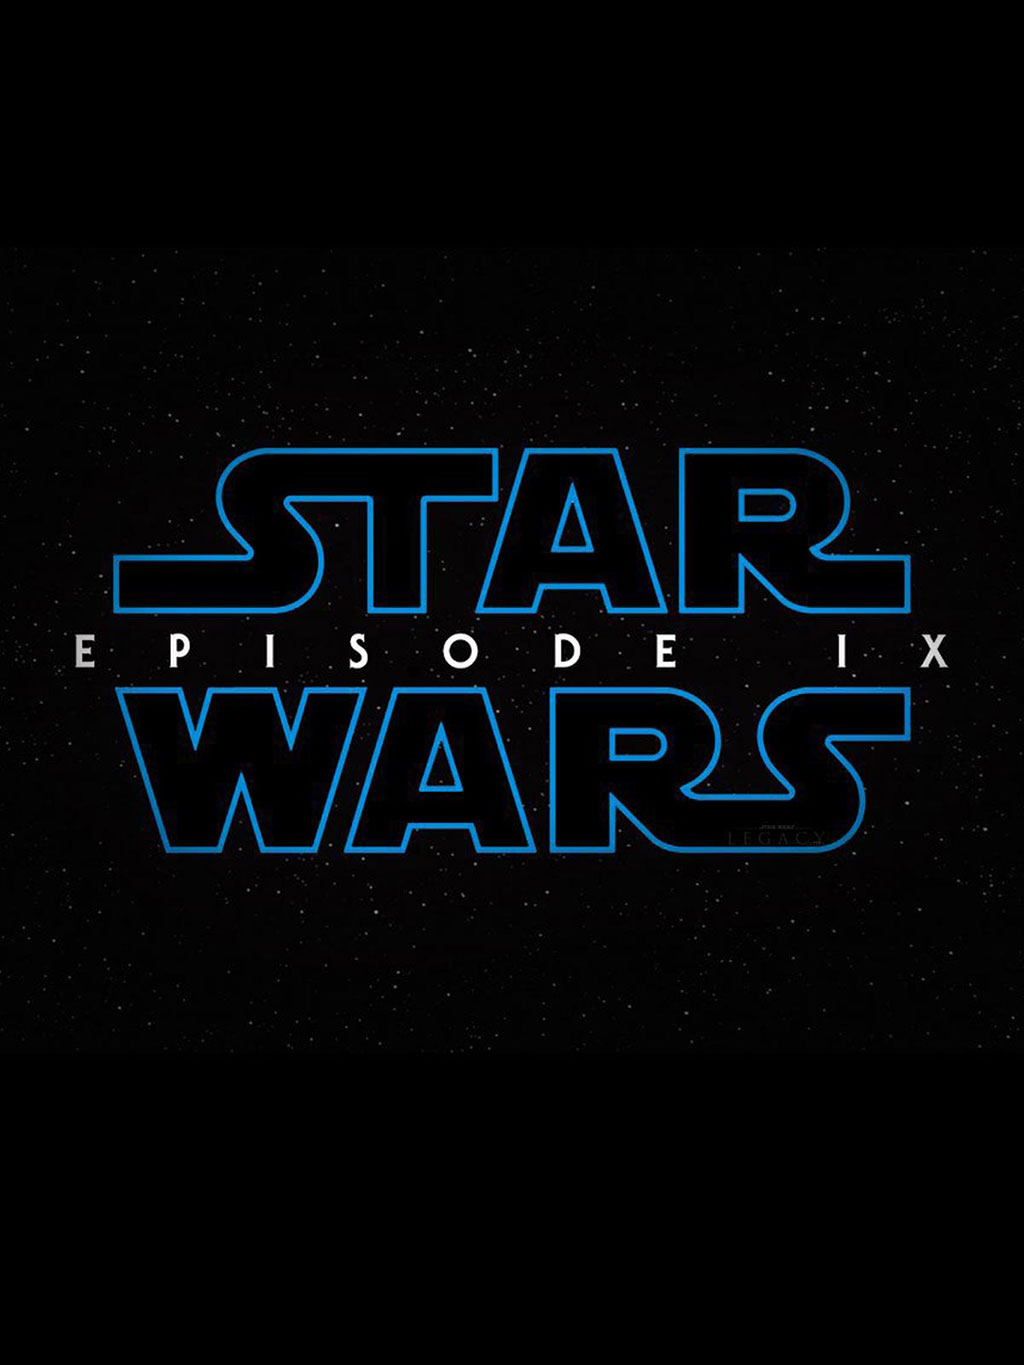  Star Wars phần chín do J. J. Abrams chỉ đạo hứa hẹn sẽ oanh tạc phòng vé tháng cuối năm 2019. Ảnh: Walt Disney Pictures 